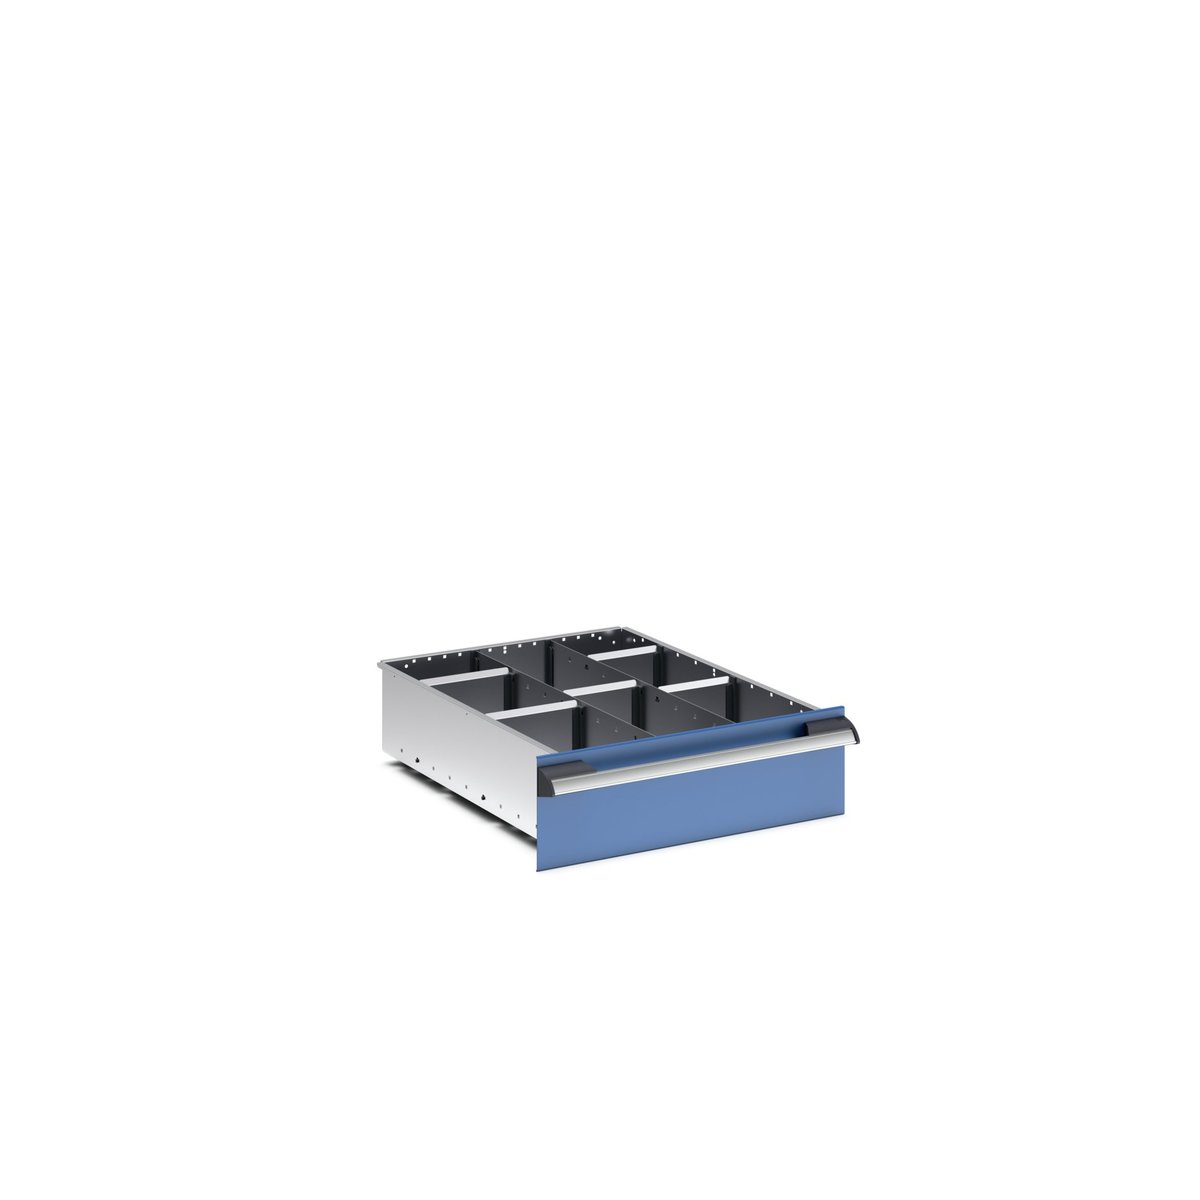 43020633.51 - cubio adjustable divider kit